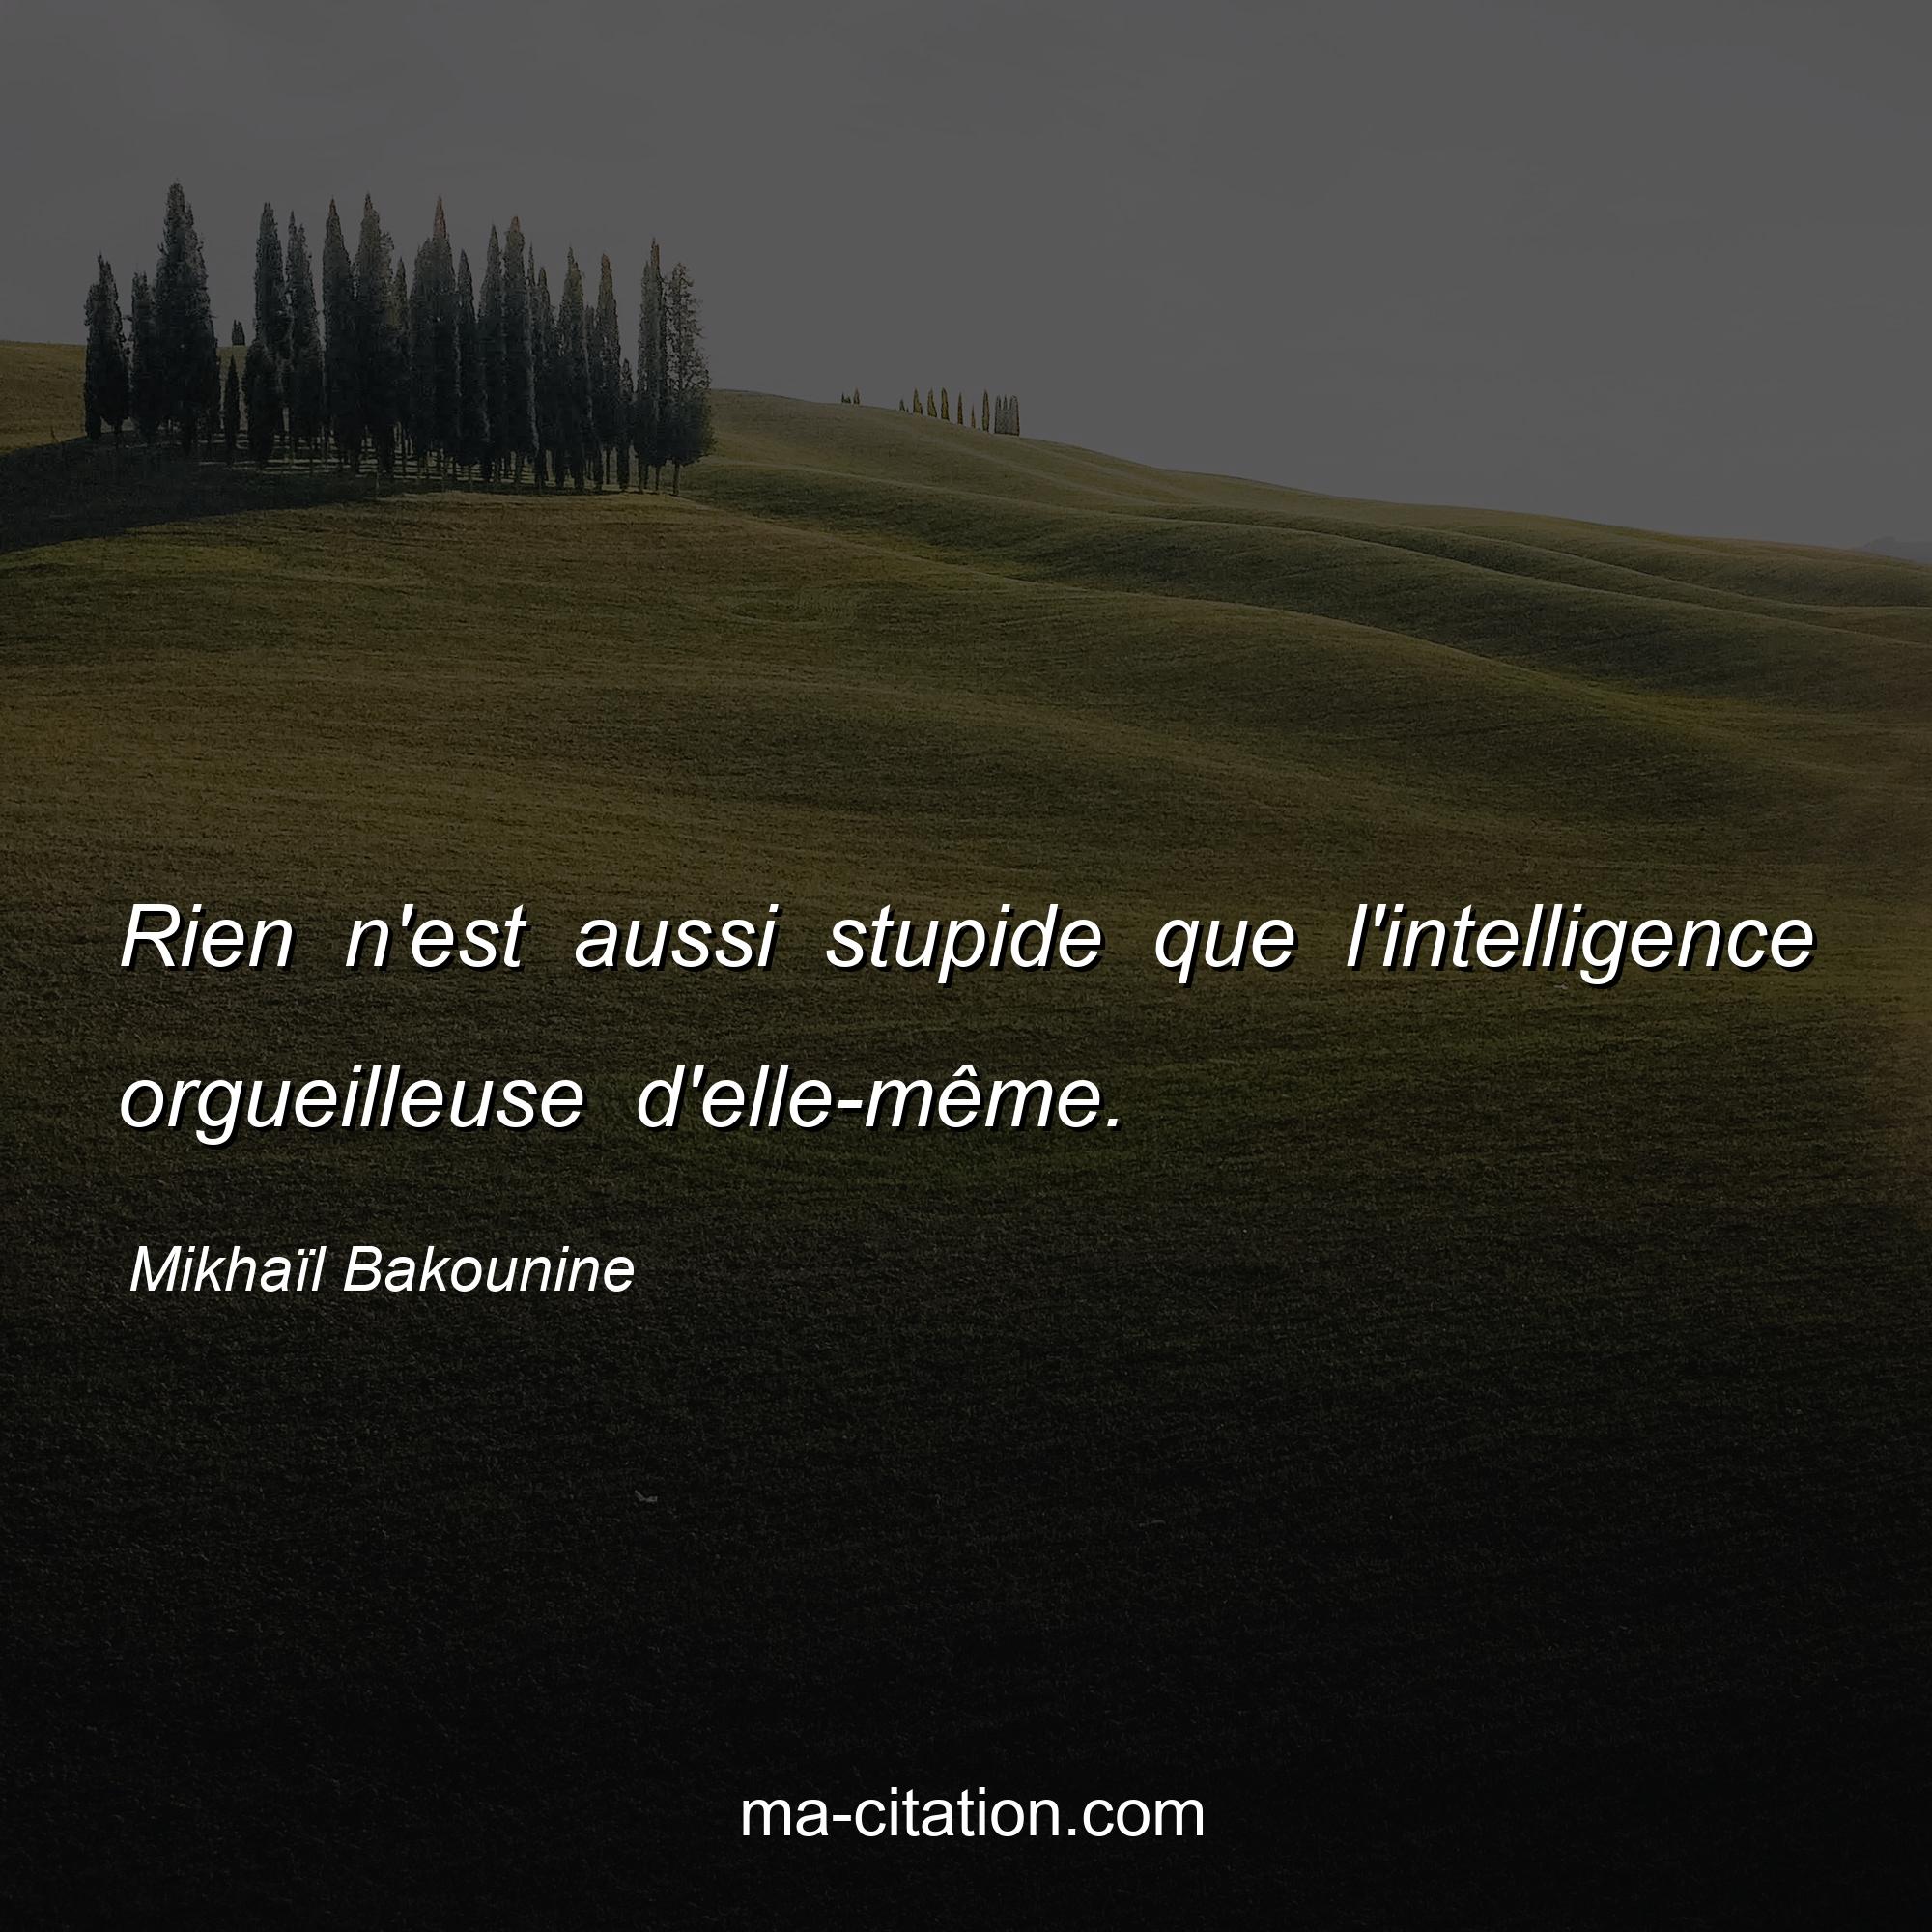 Mikhaïl Bakounine : Rien n'est aussi stupide que l'intelligence orgueilleuse d'elle-même.